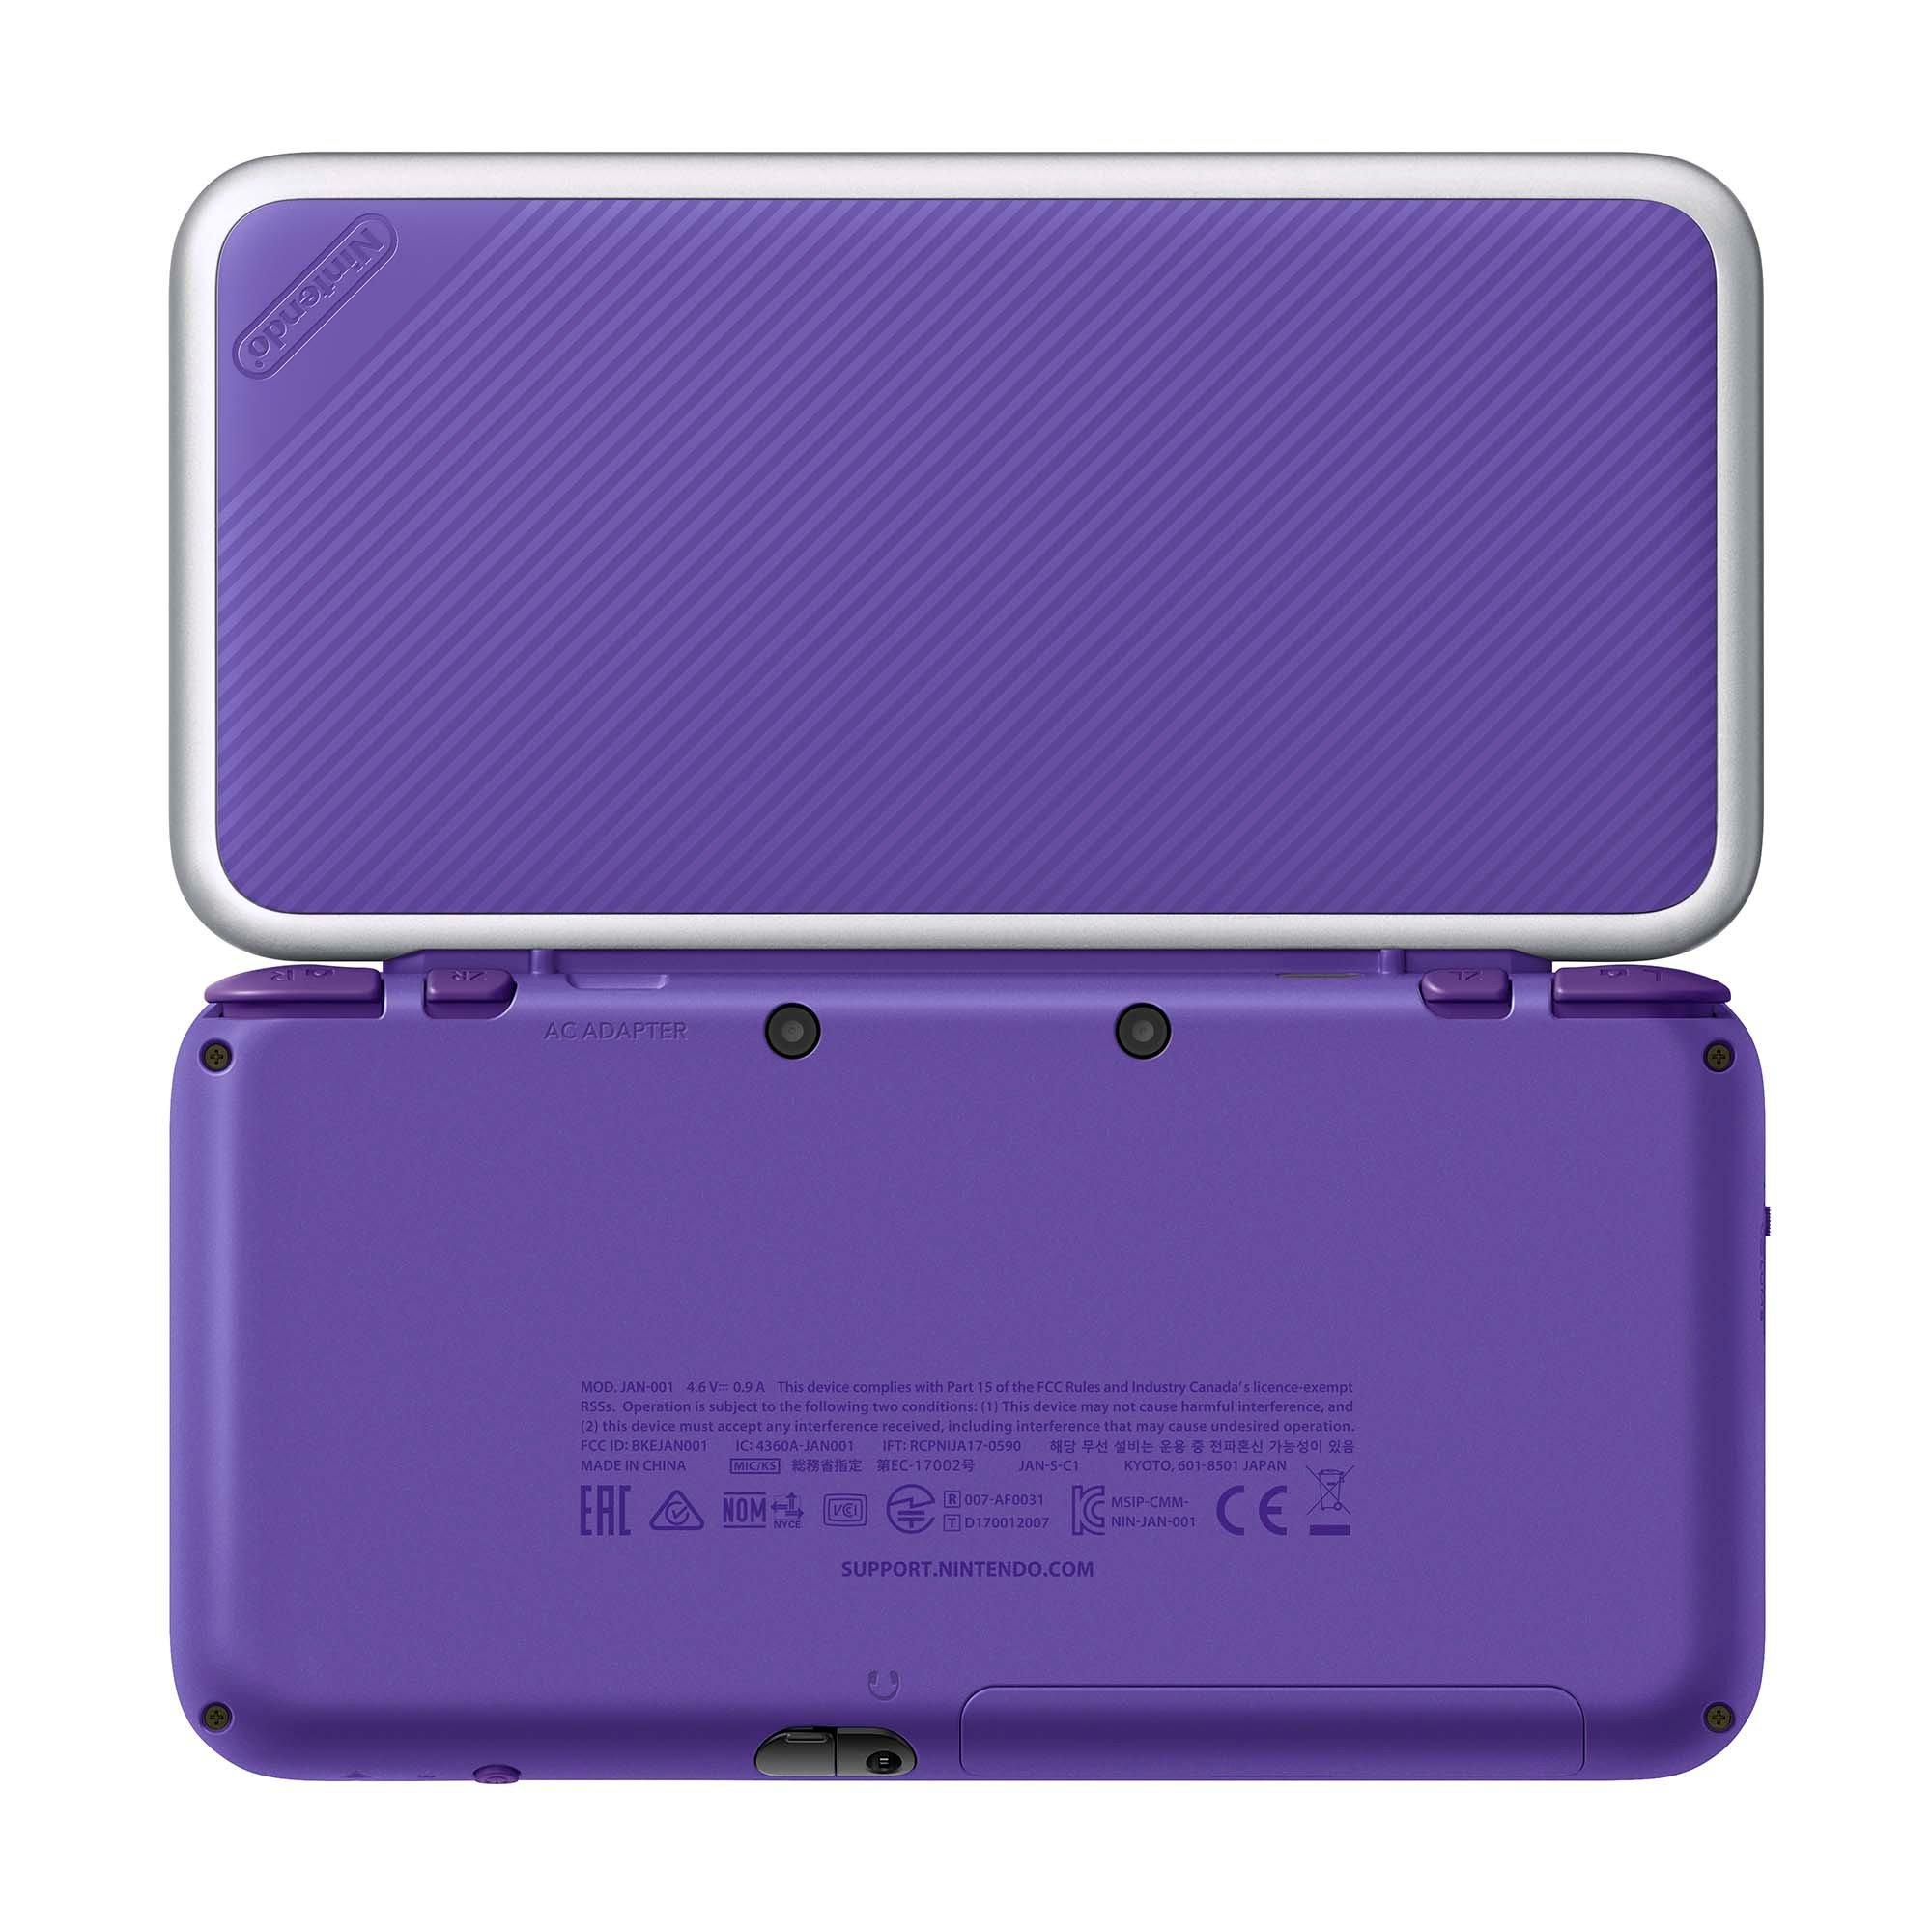 Nintendo 2ds Xl Purple And Silver Mario Kart 7 Bundle Nintendo 2ds Gamestop